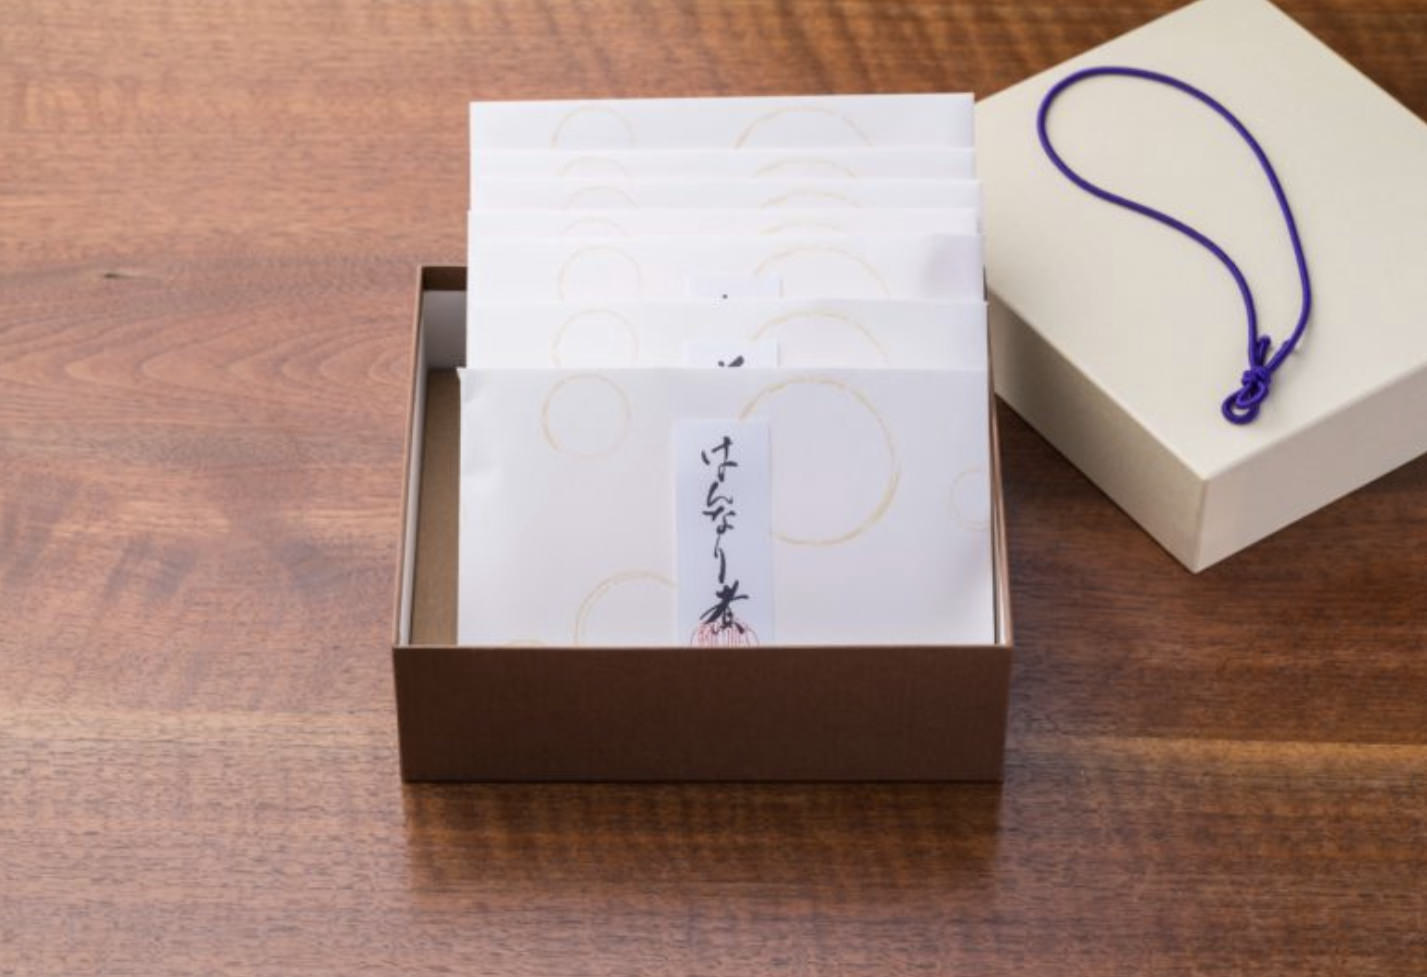 京都で三十余年、京都祇園の会席料理店「祇園迦陵」が
ご自宅や贈答で喜ばれる「祇園のおもたせ」を全国販売開始！